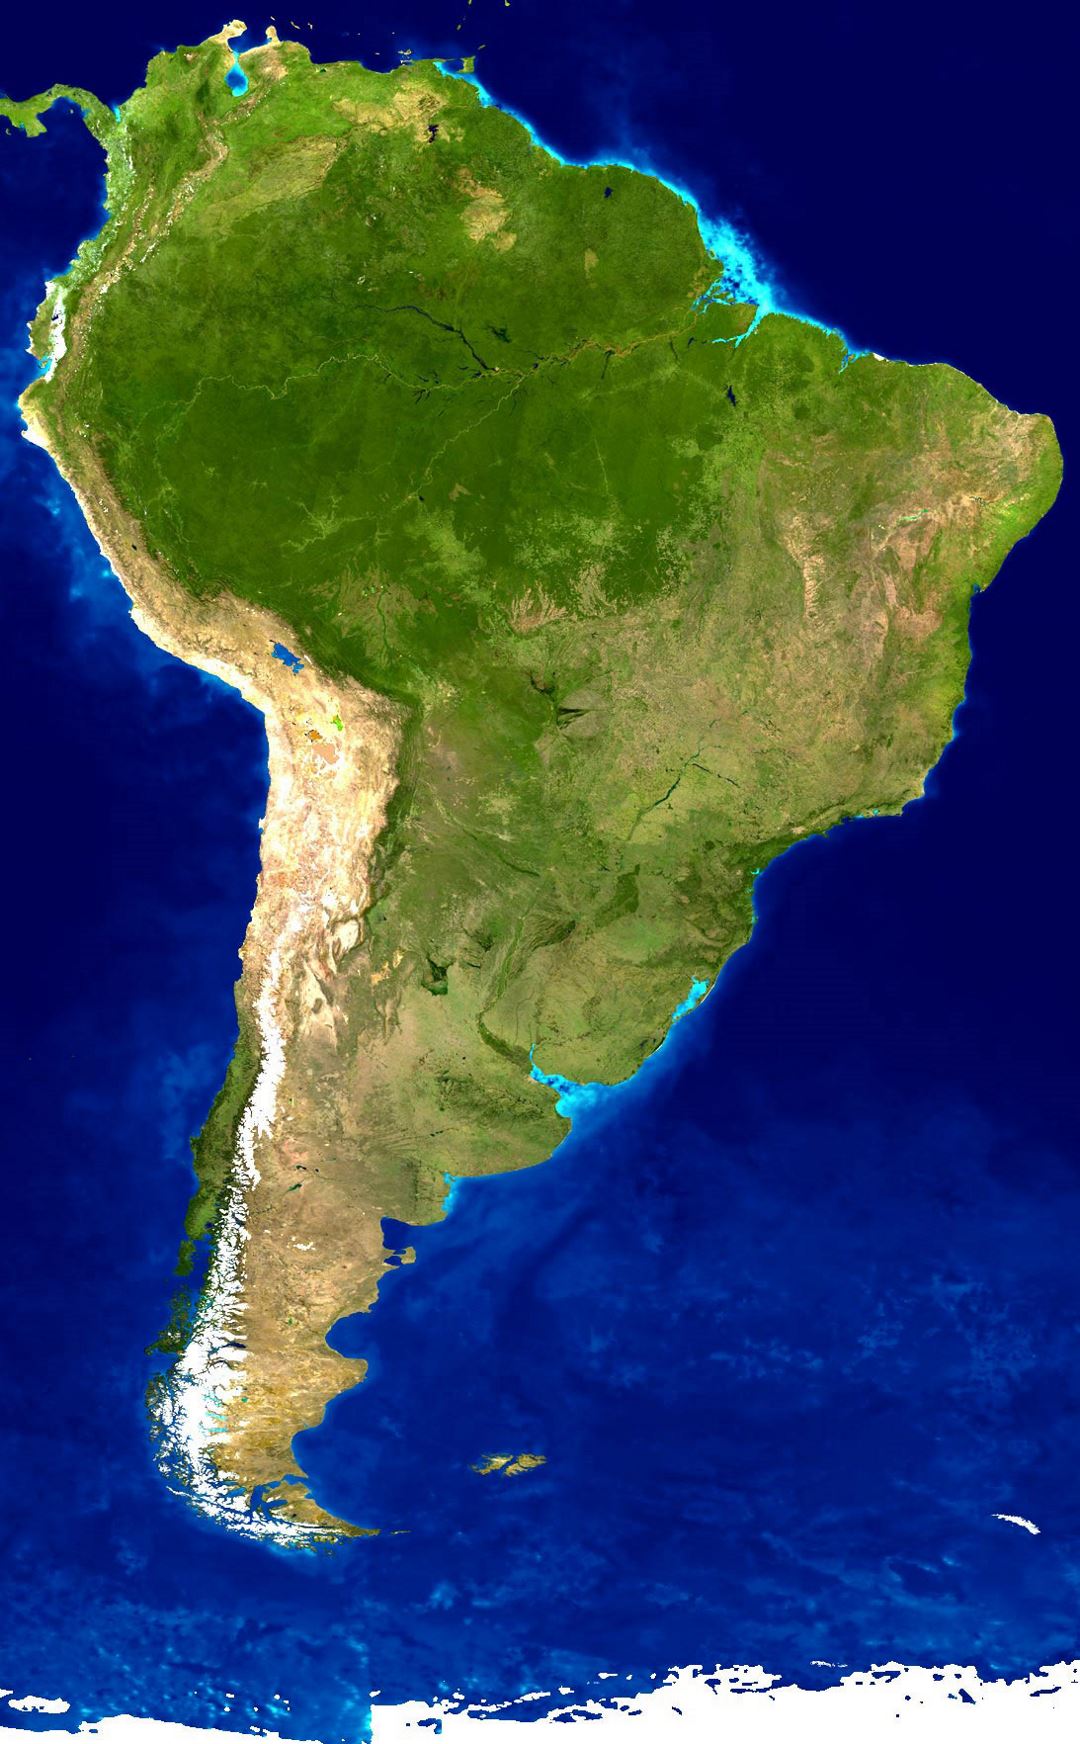 Mapa satelital detallado de América del Sur